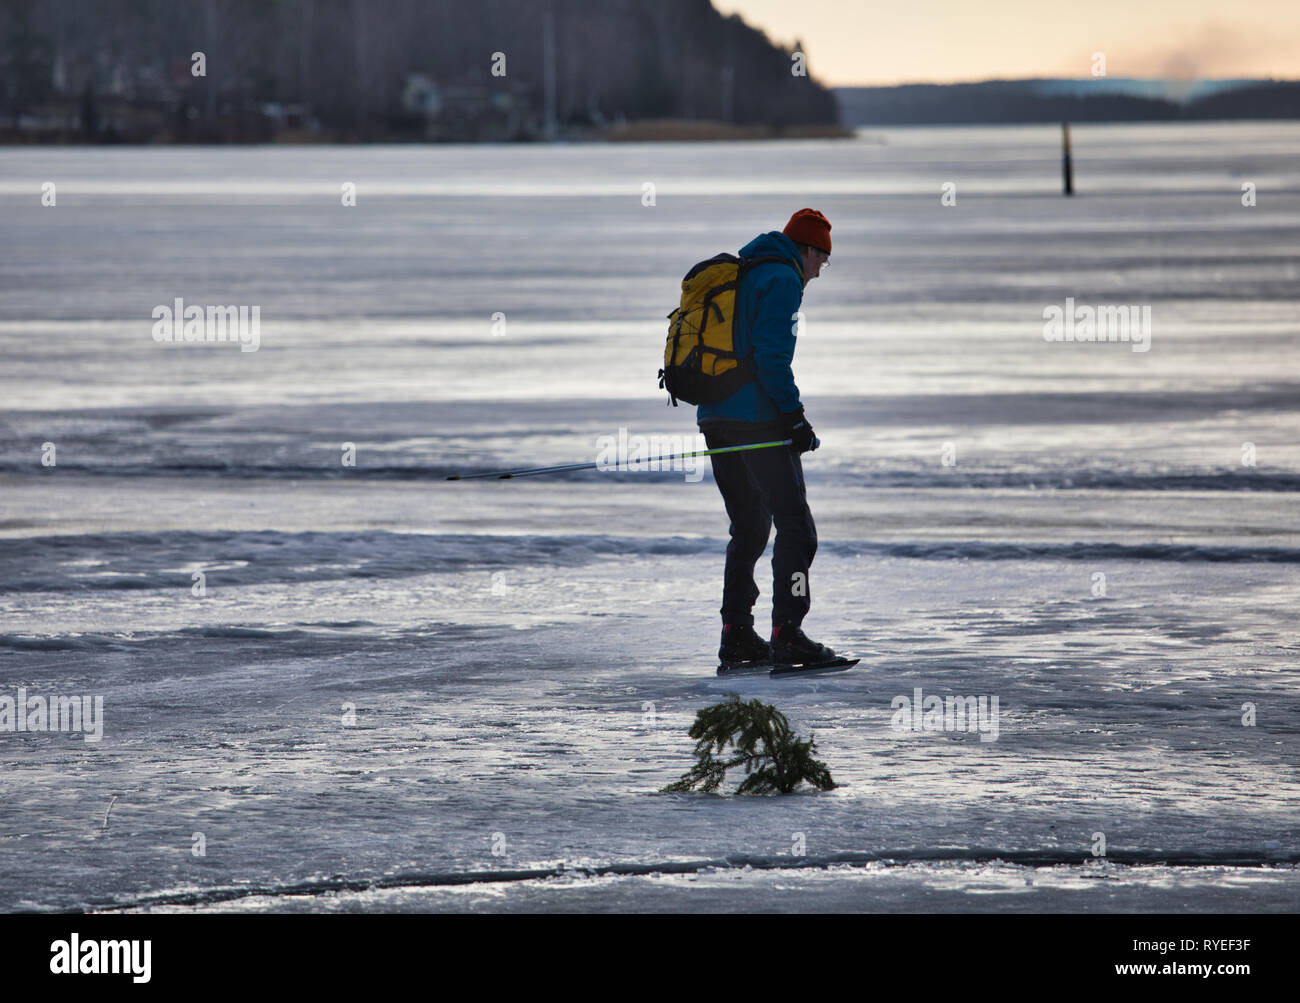 Lunga distanza Skater ghiaccio sul lago Malaren, Svezia e Scandinavia Foto Stock